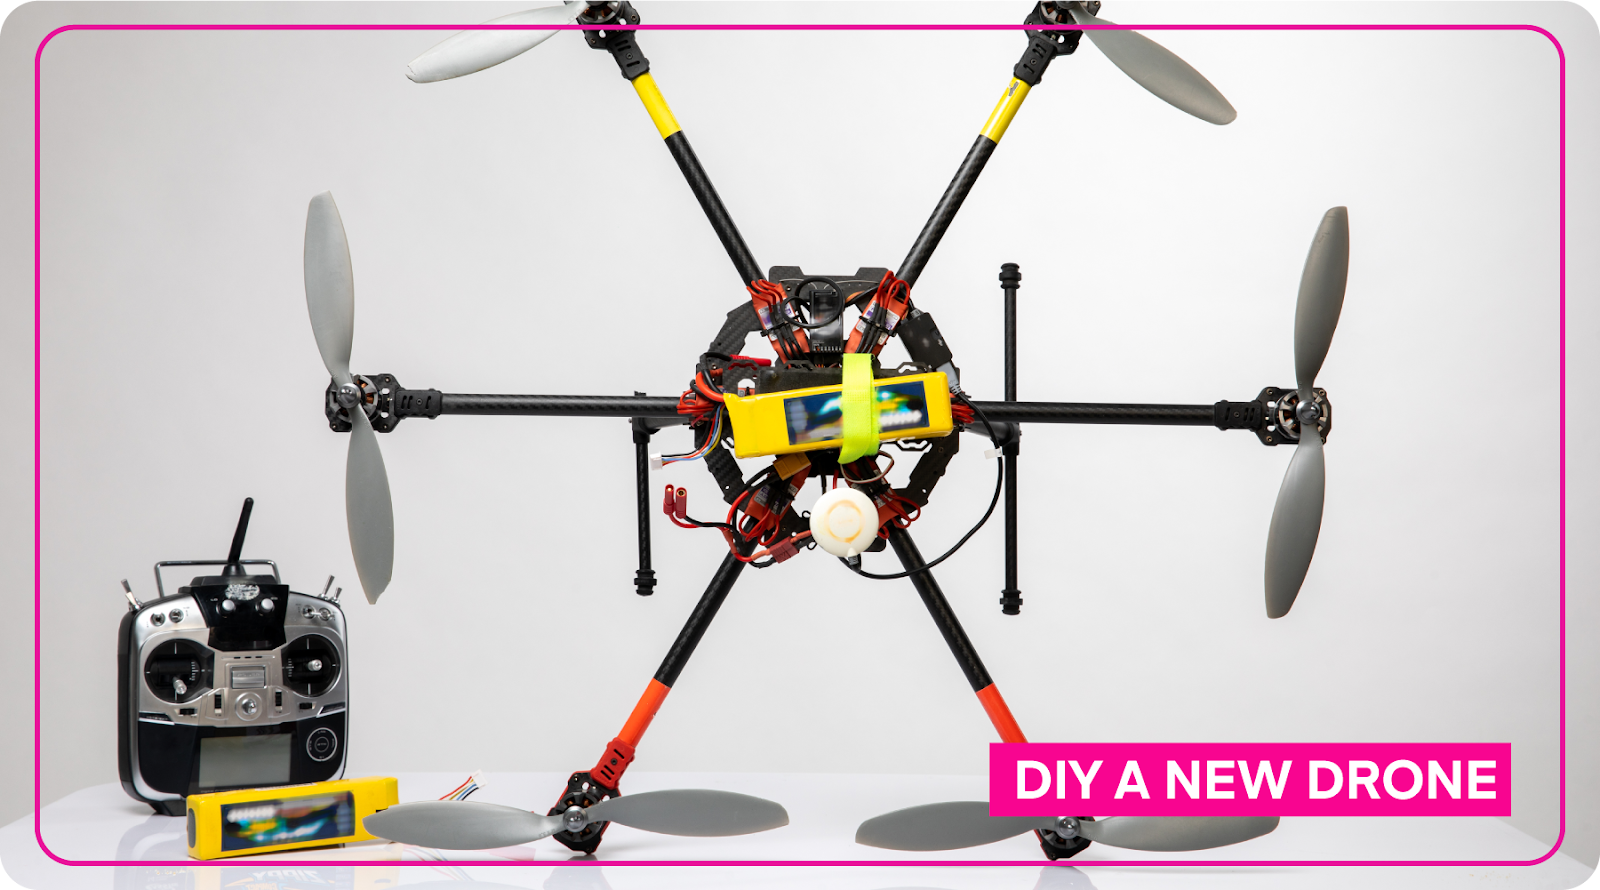 A DIY drone.